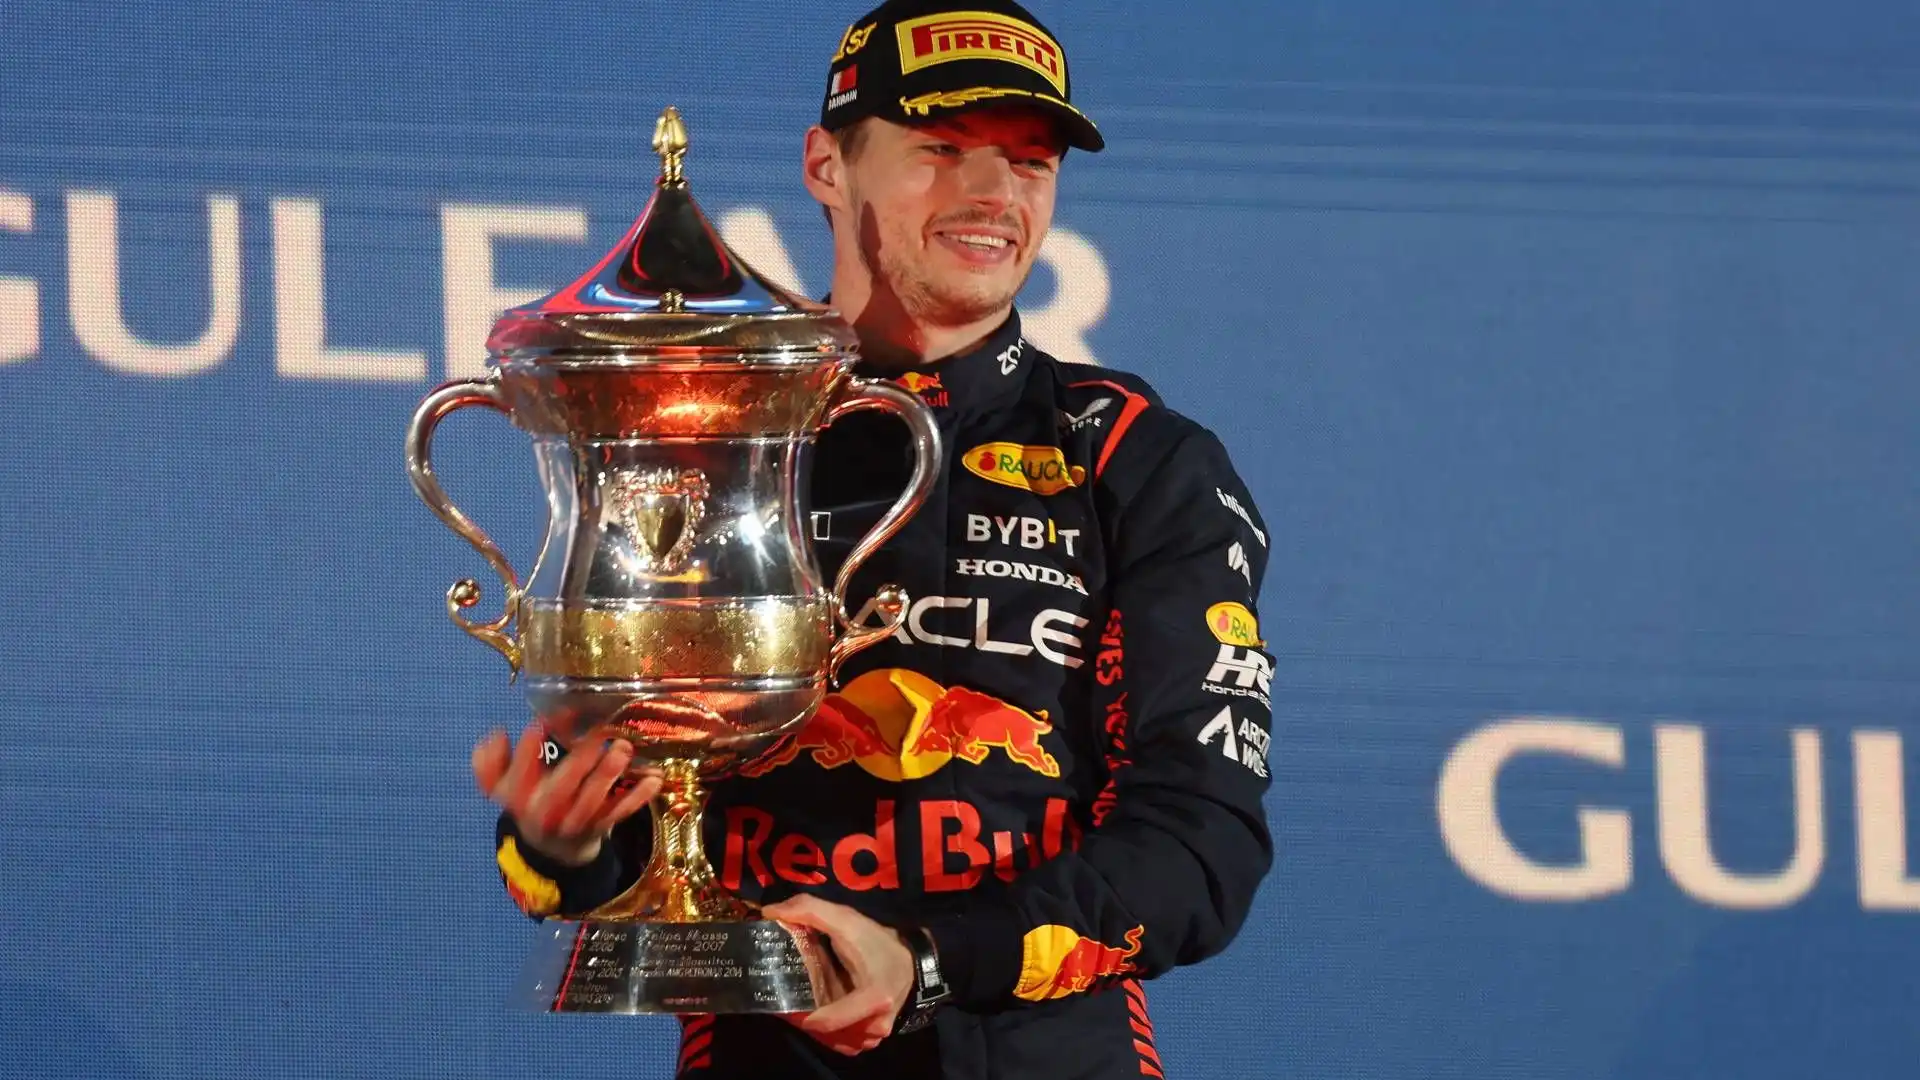 Quest'anno sono arrivate 11 vittorie su 11 Gran Premi disputati: nel Gran Premio del Bahrein ha vinto Max Verstappen